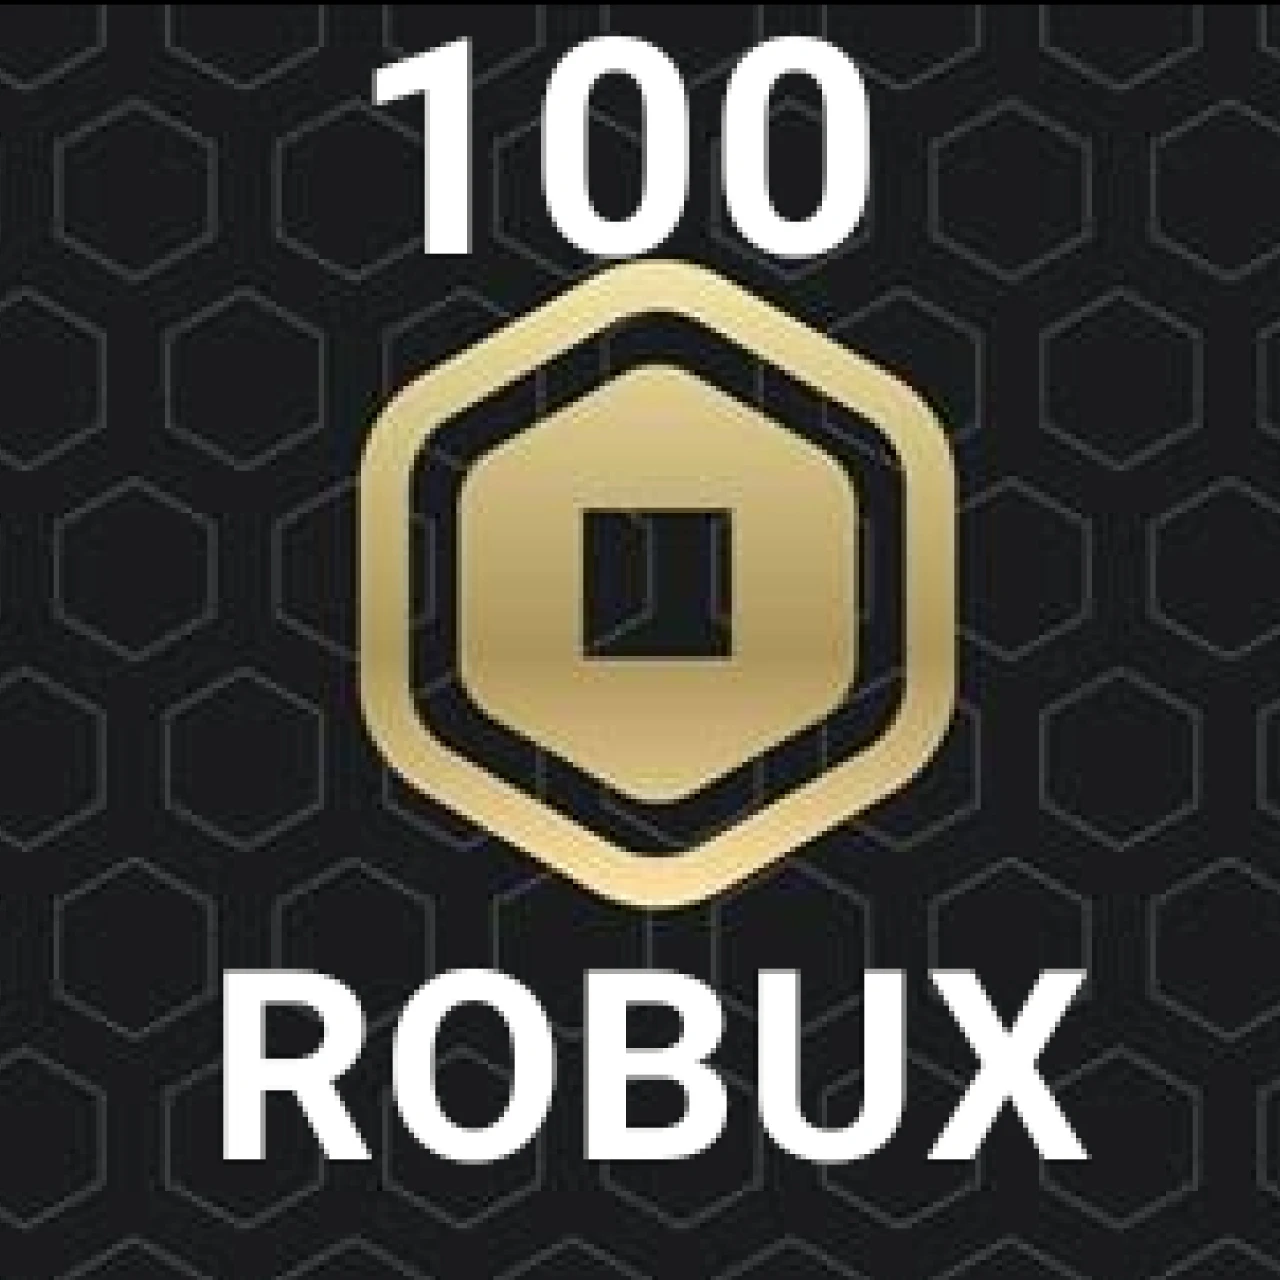 100 Robux Gift Card - Entrega Automática! - Gift Cards - DFG